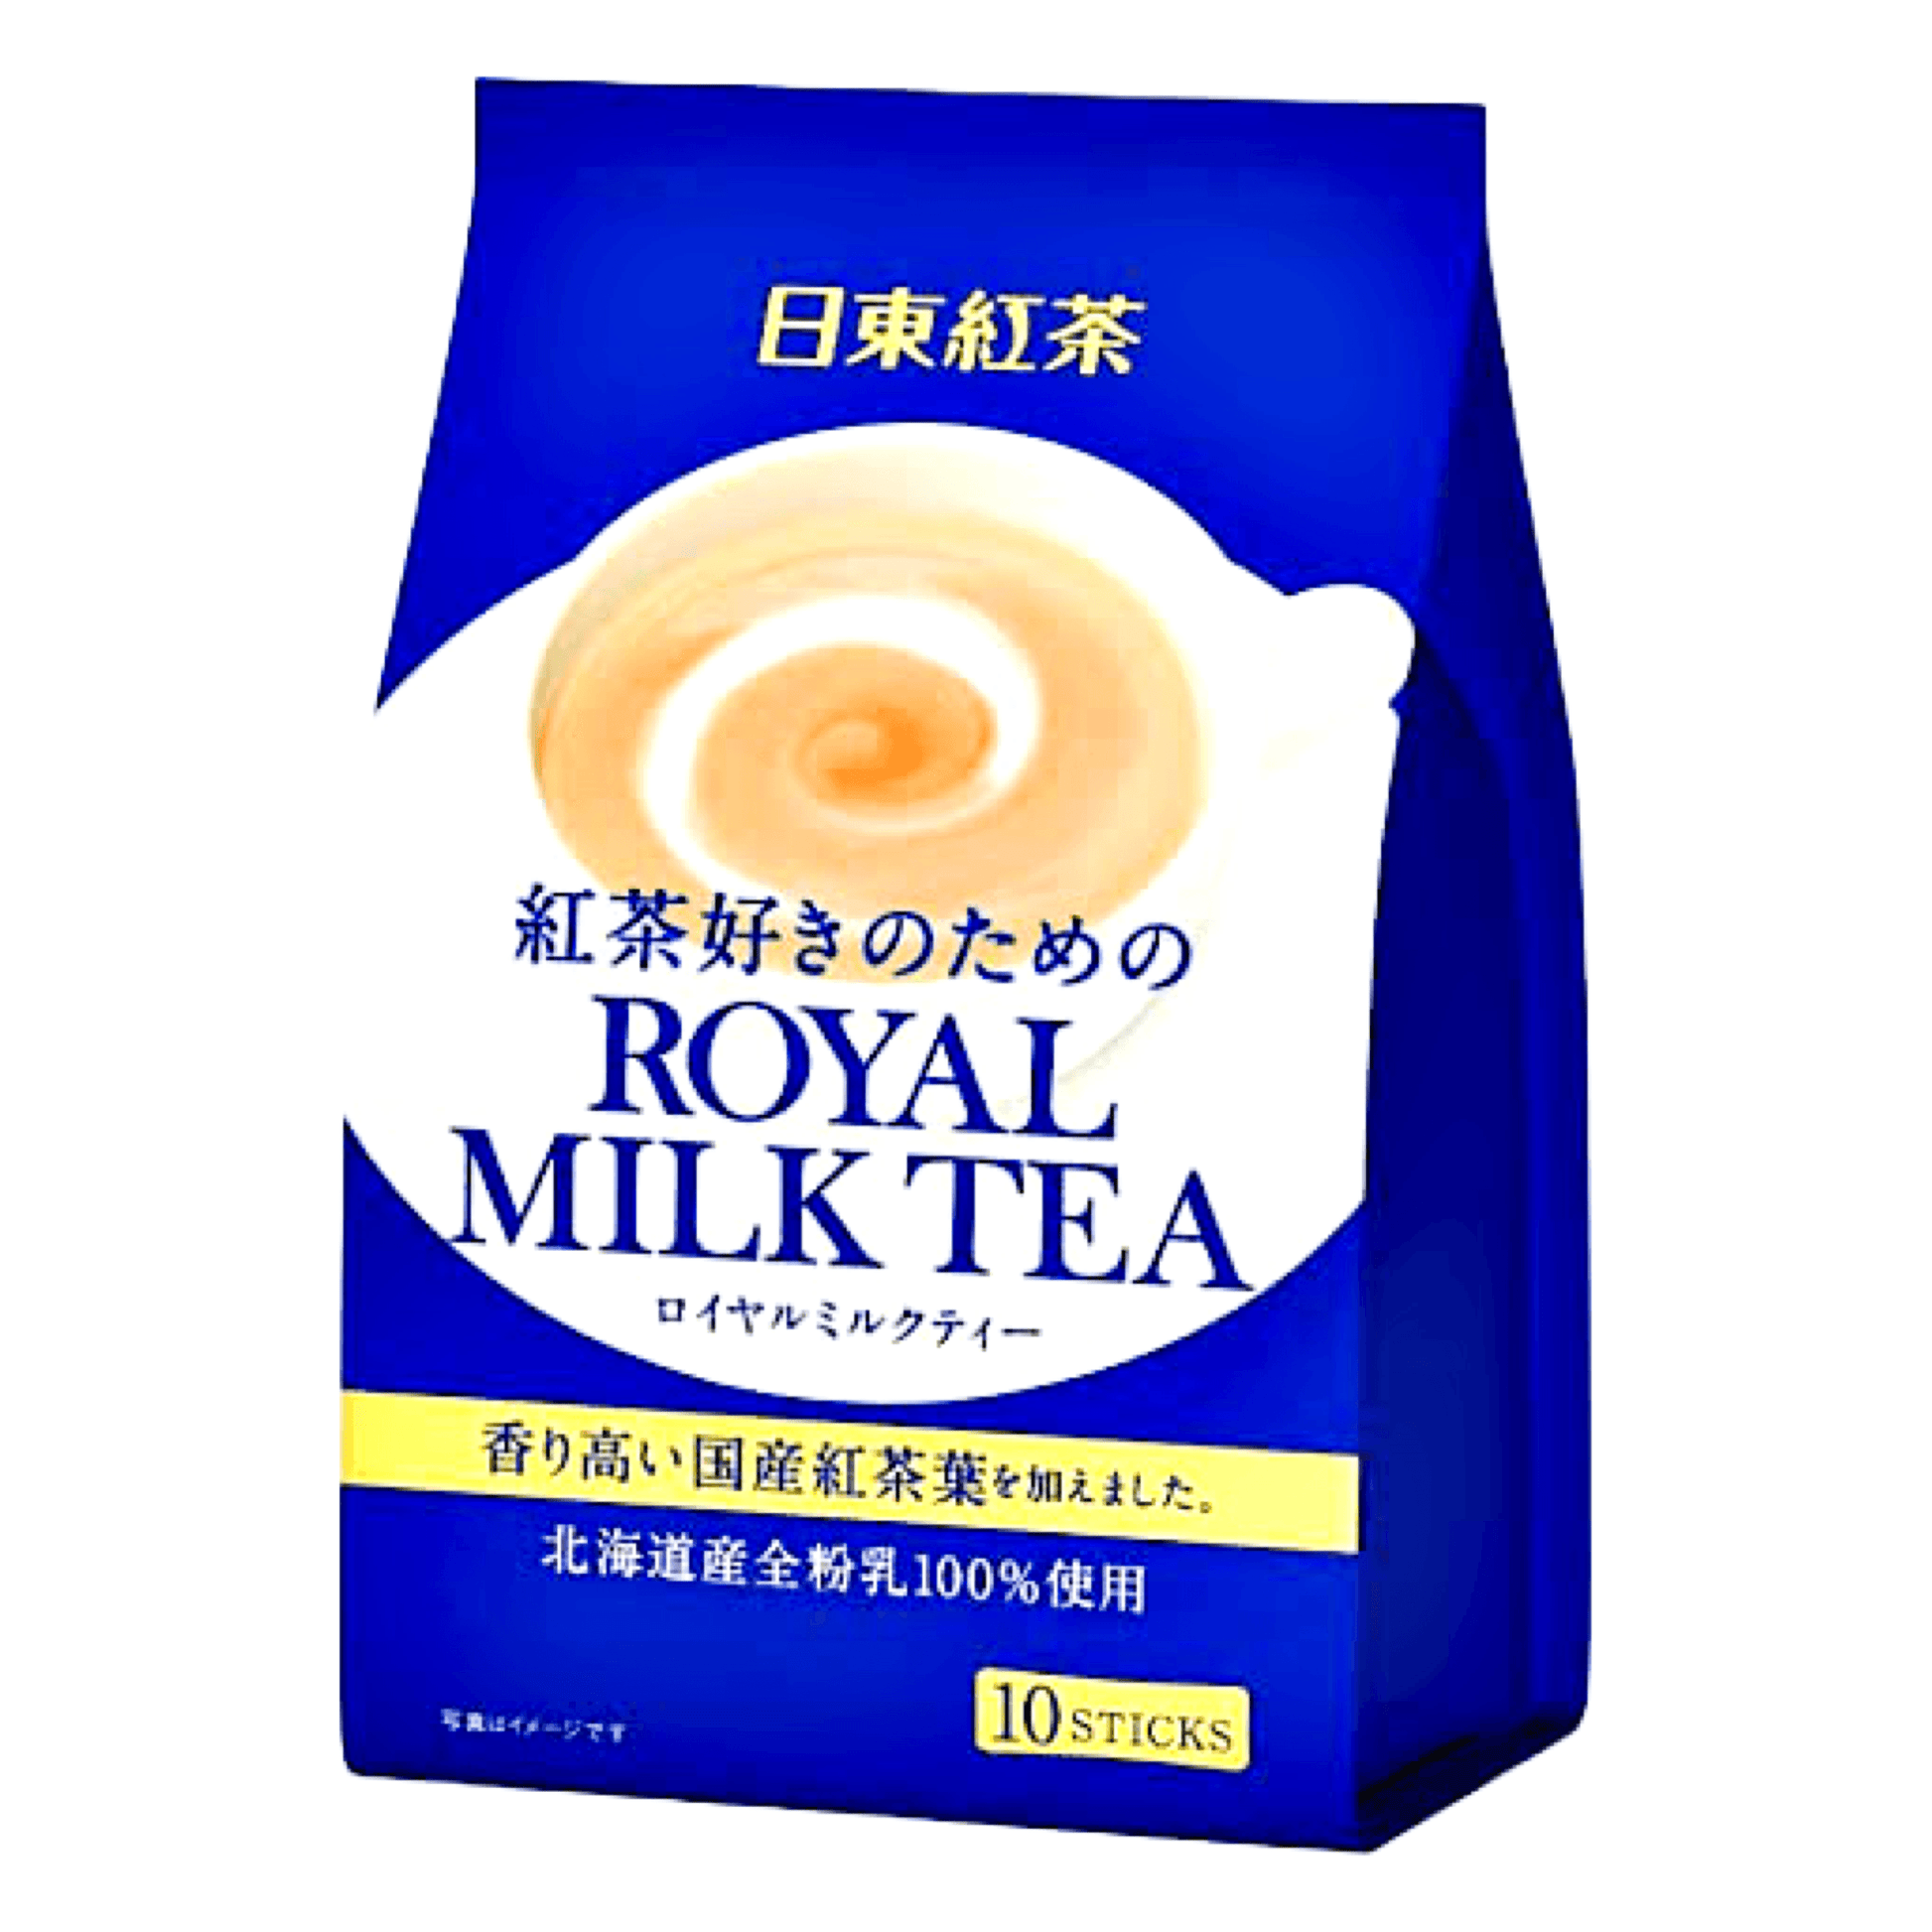 Mitsui Norin Instant Royal Milk Tea 10 Sticks - The Snacks Box - Asian Snacks Store - The Snacks Box - Korean Snack - Japanese Snack